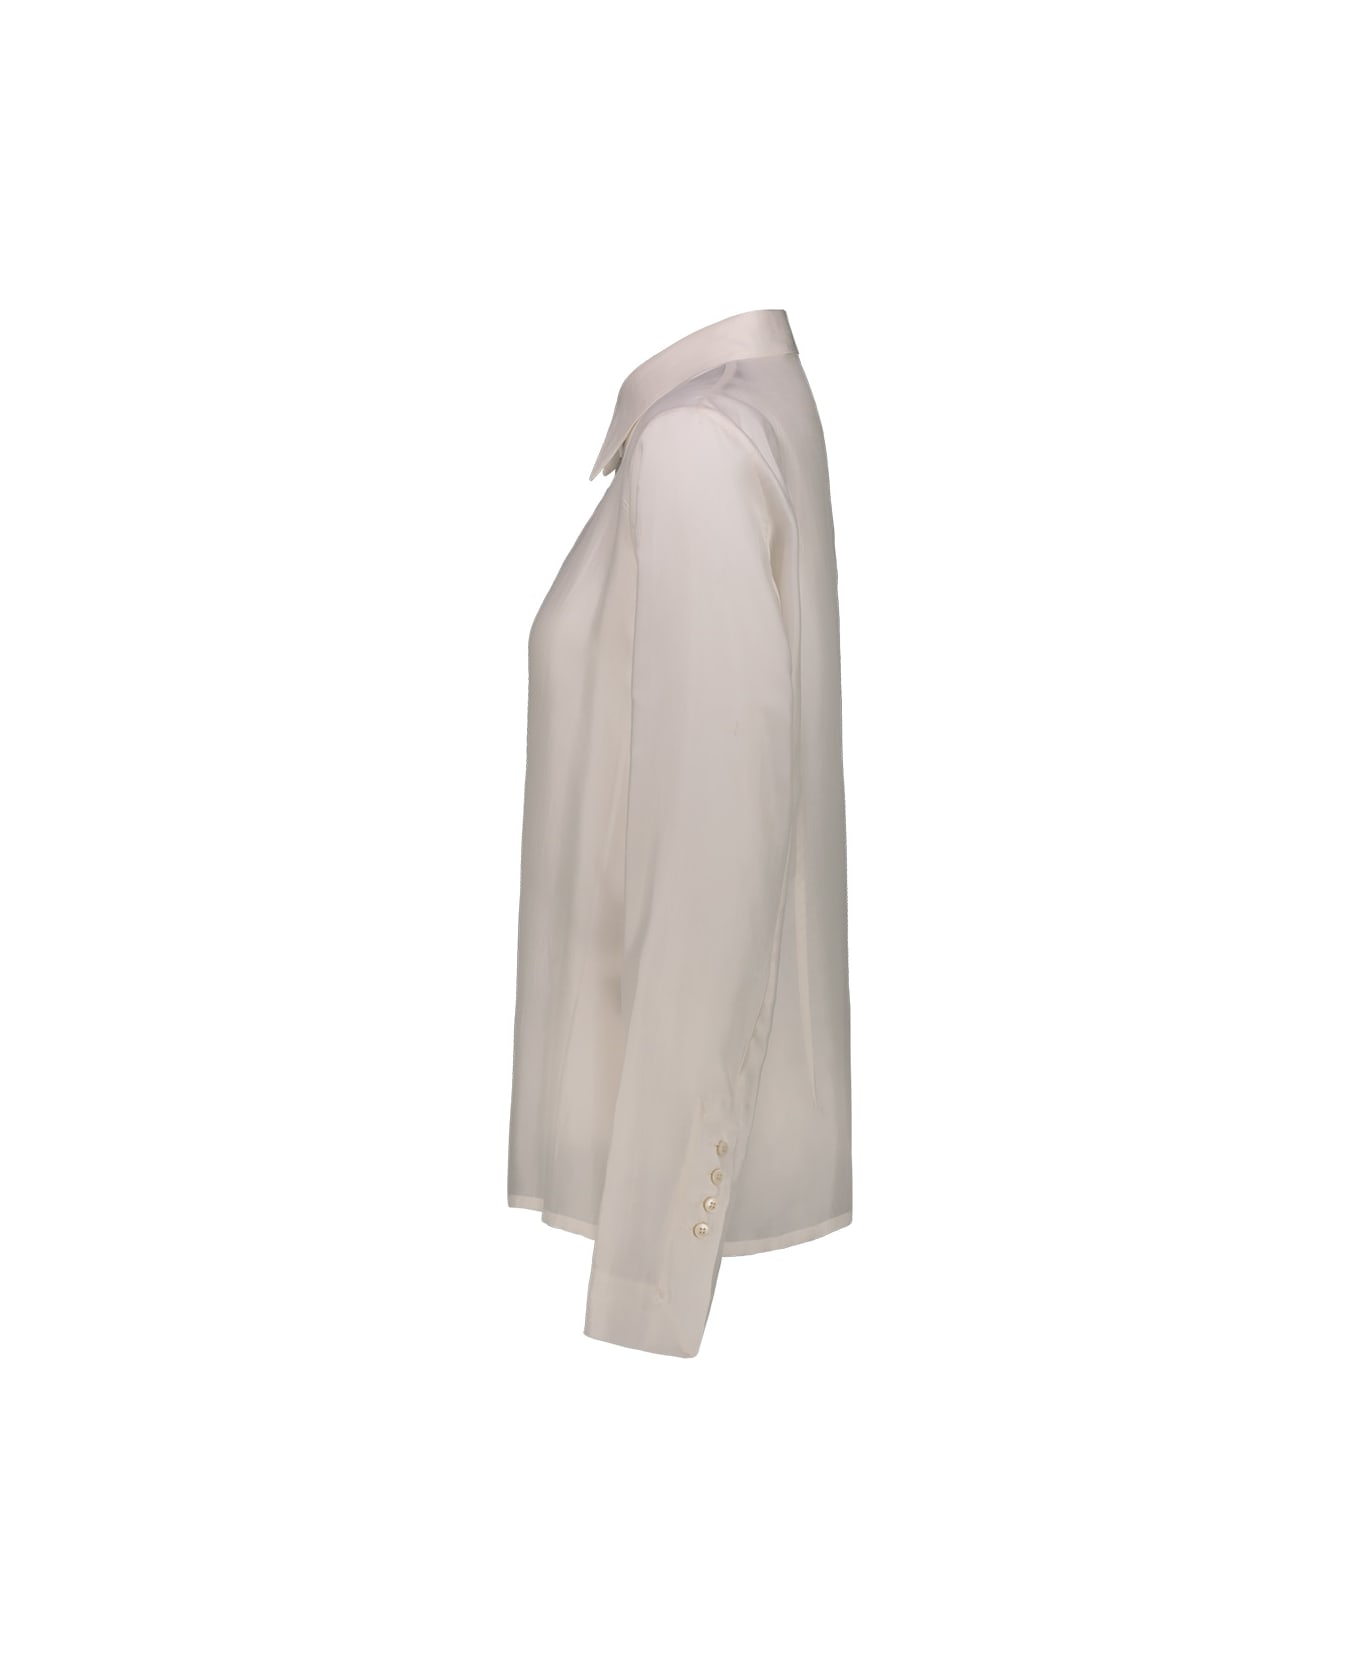 Sapio Cupro Shirt - White